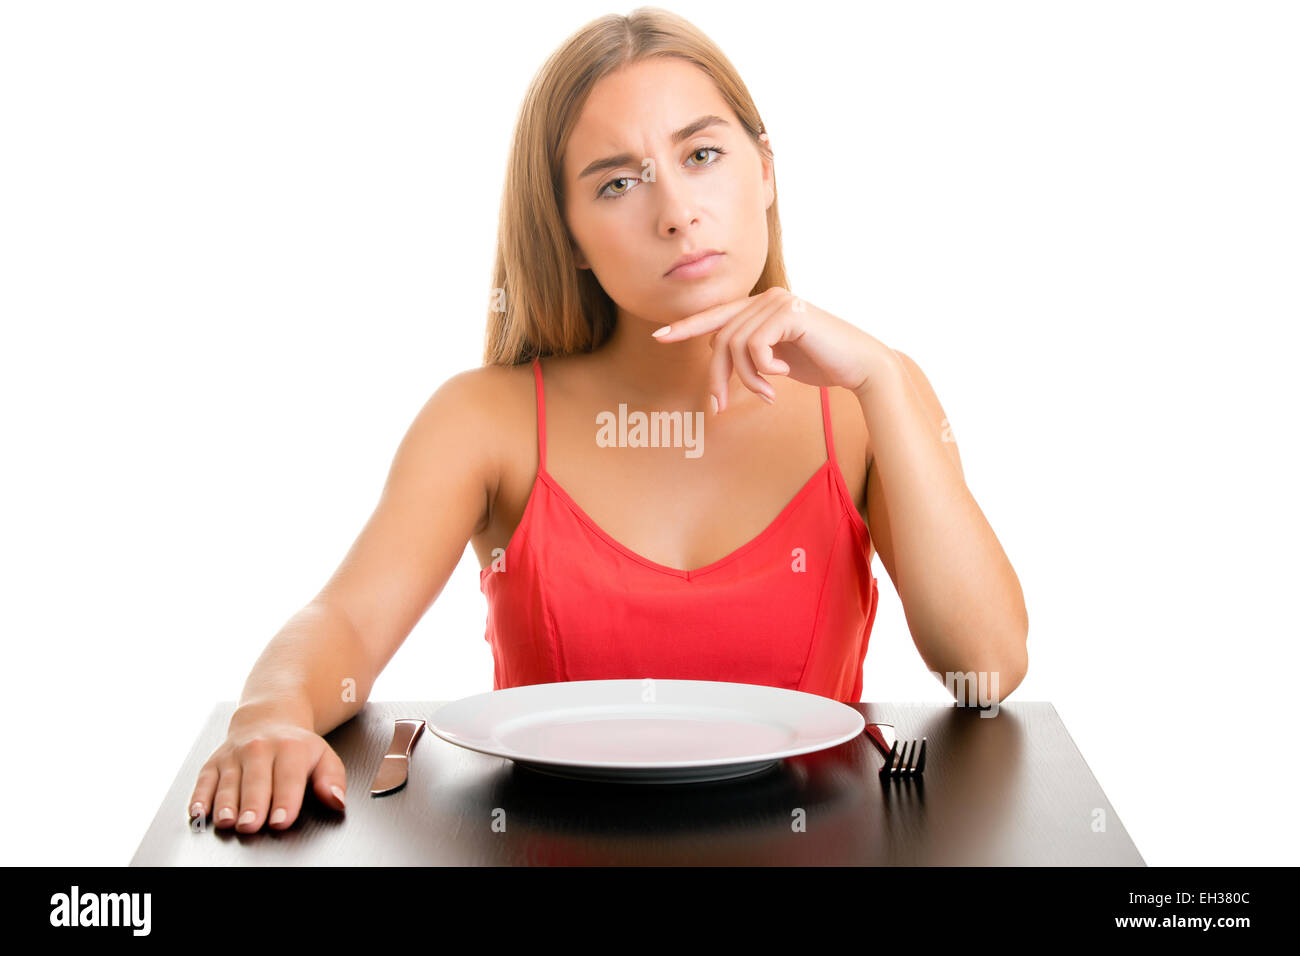 Femme affamé sur un régime alimentaire en attente avec une place vide, isolé en blanc Banque D'Images